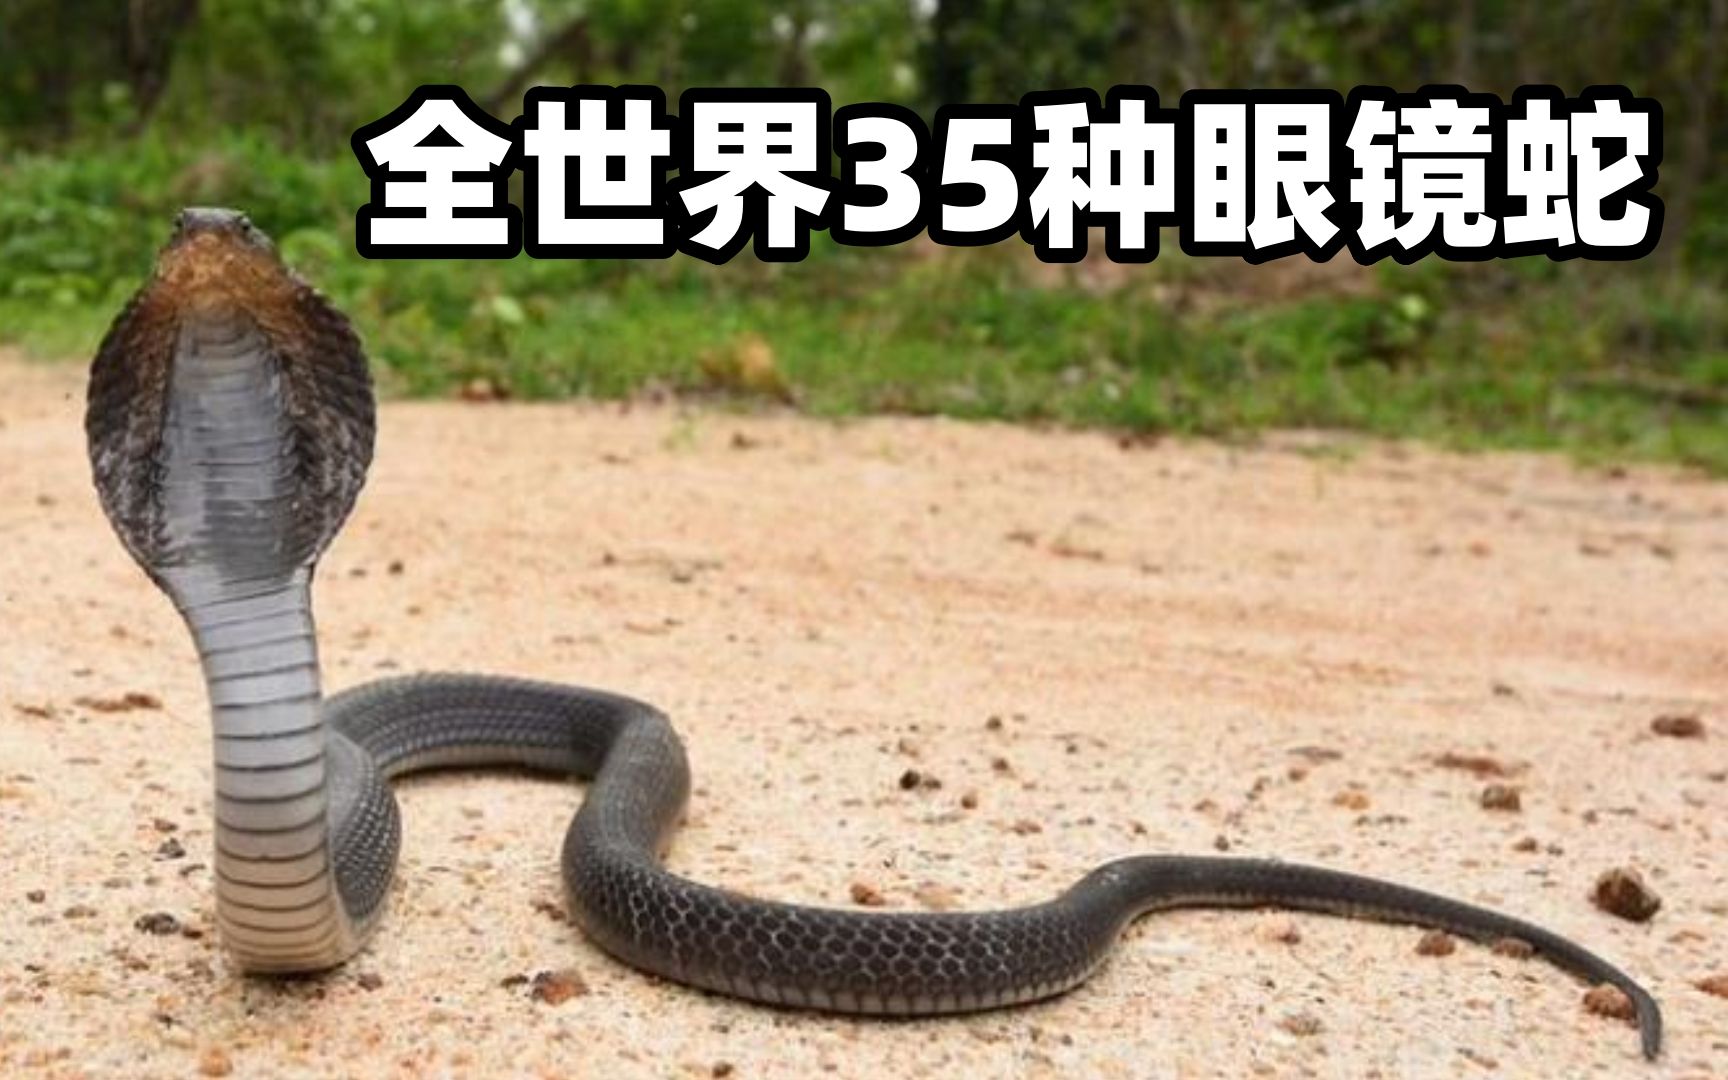 盘点地球所有30种眼镜蛇种类：中国仅有2种，你都知道哪些呢？